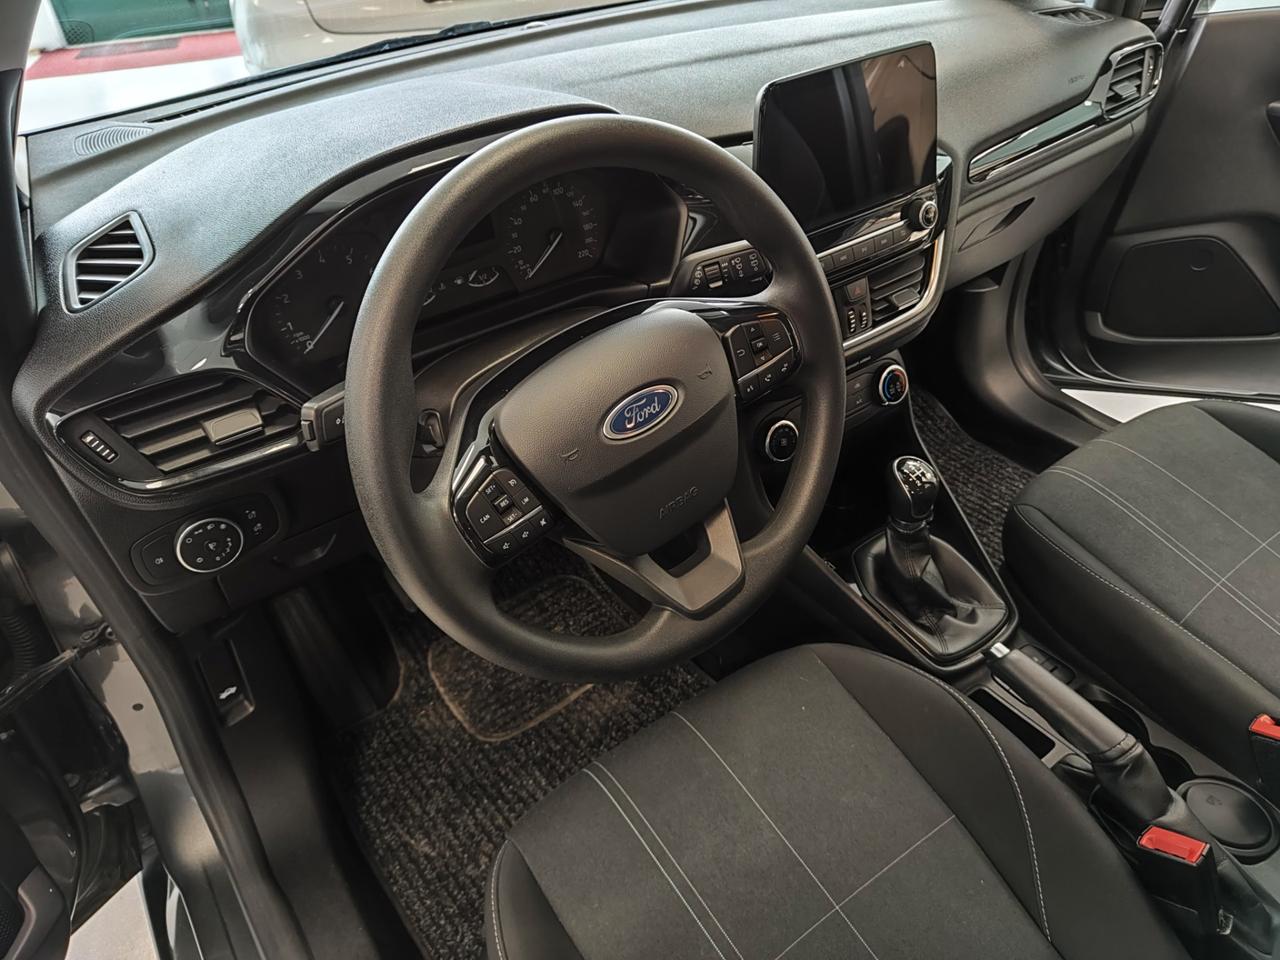 Ford Fiesta 1.1 85 CV 5 porte Plus 11/2019 NEOPATENTATI